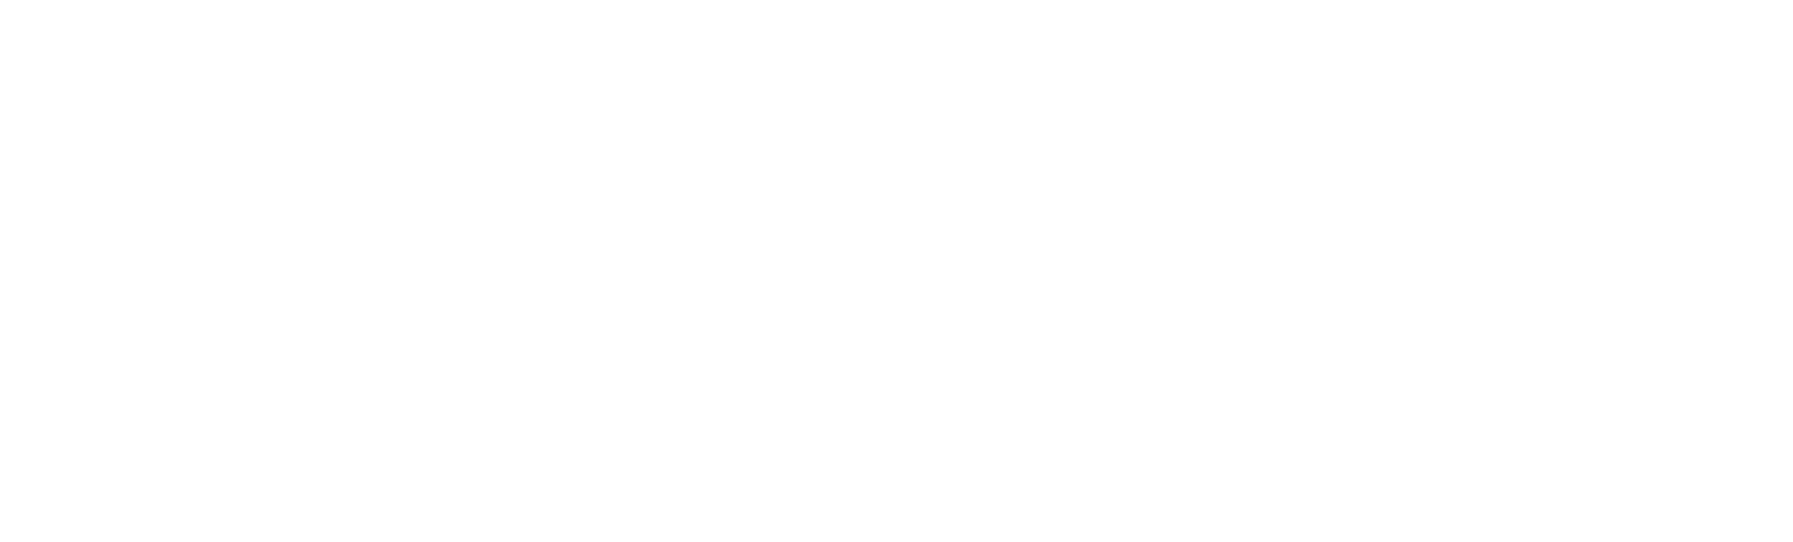 Gatos Silver logo large for dark backgrounds (transparent PNG)